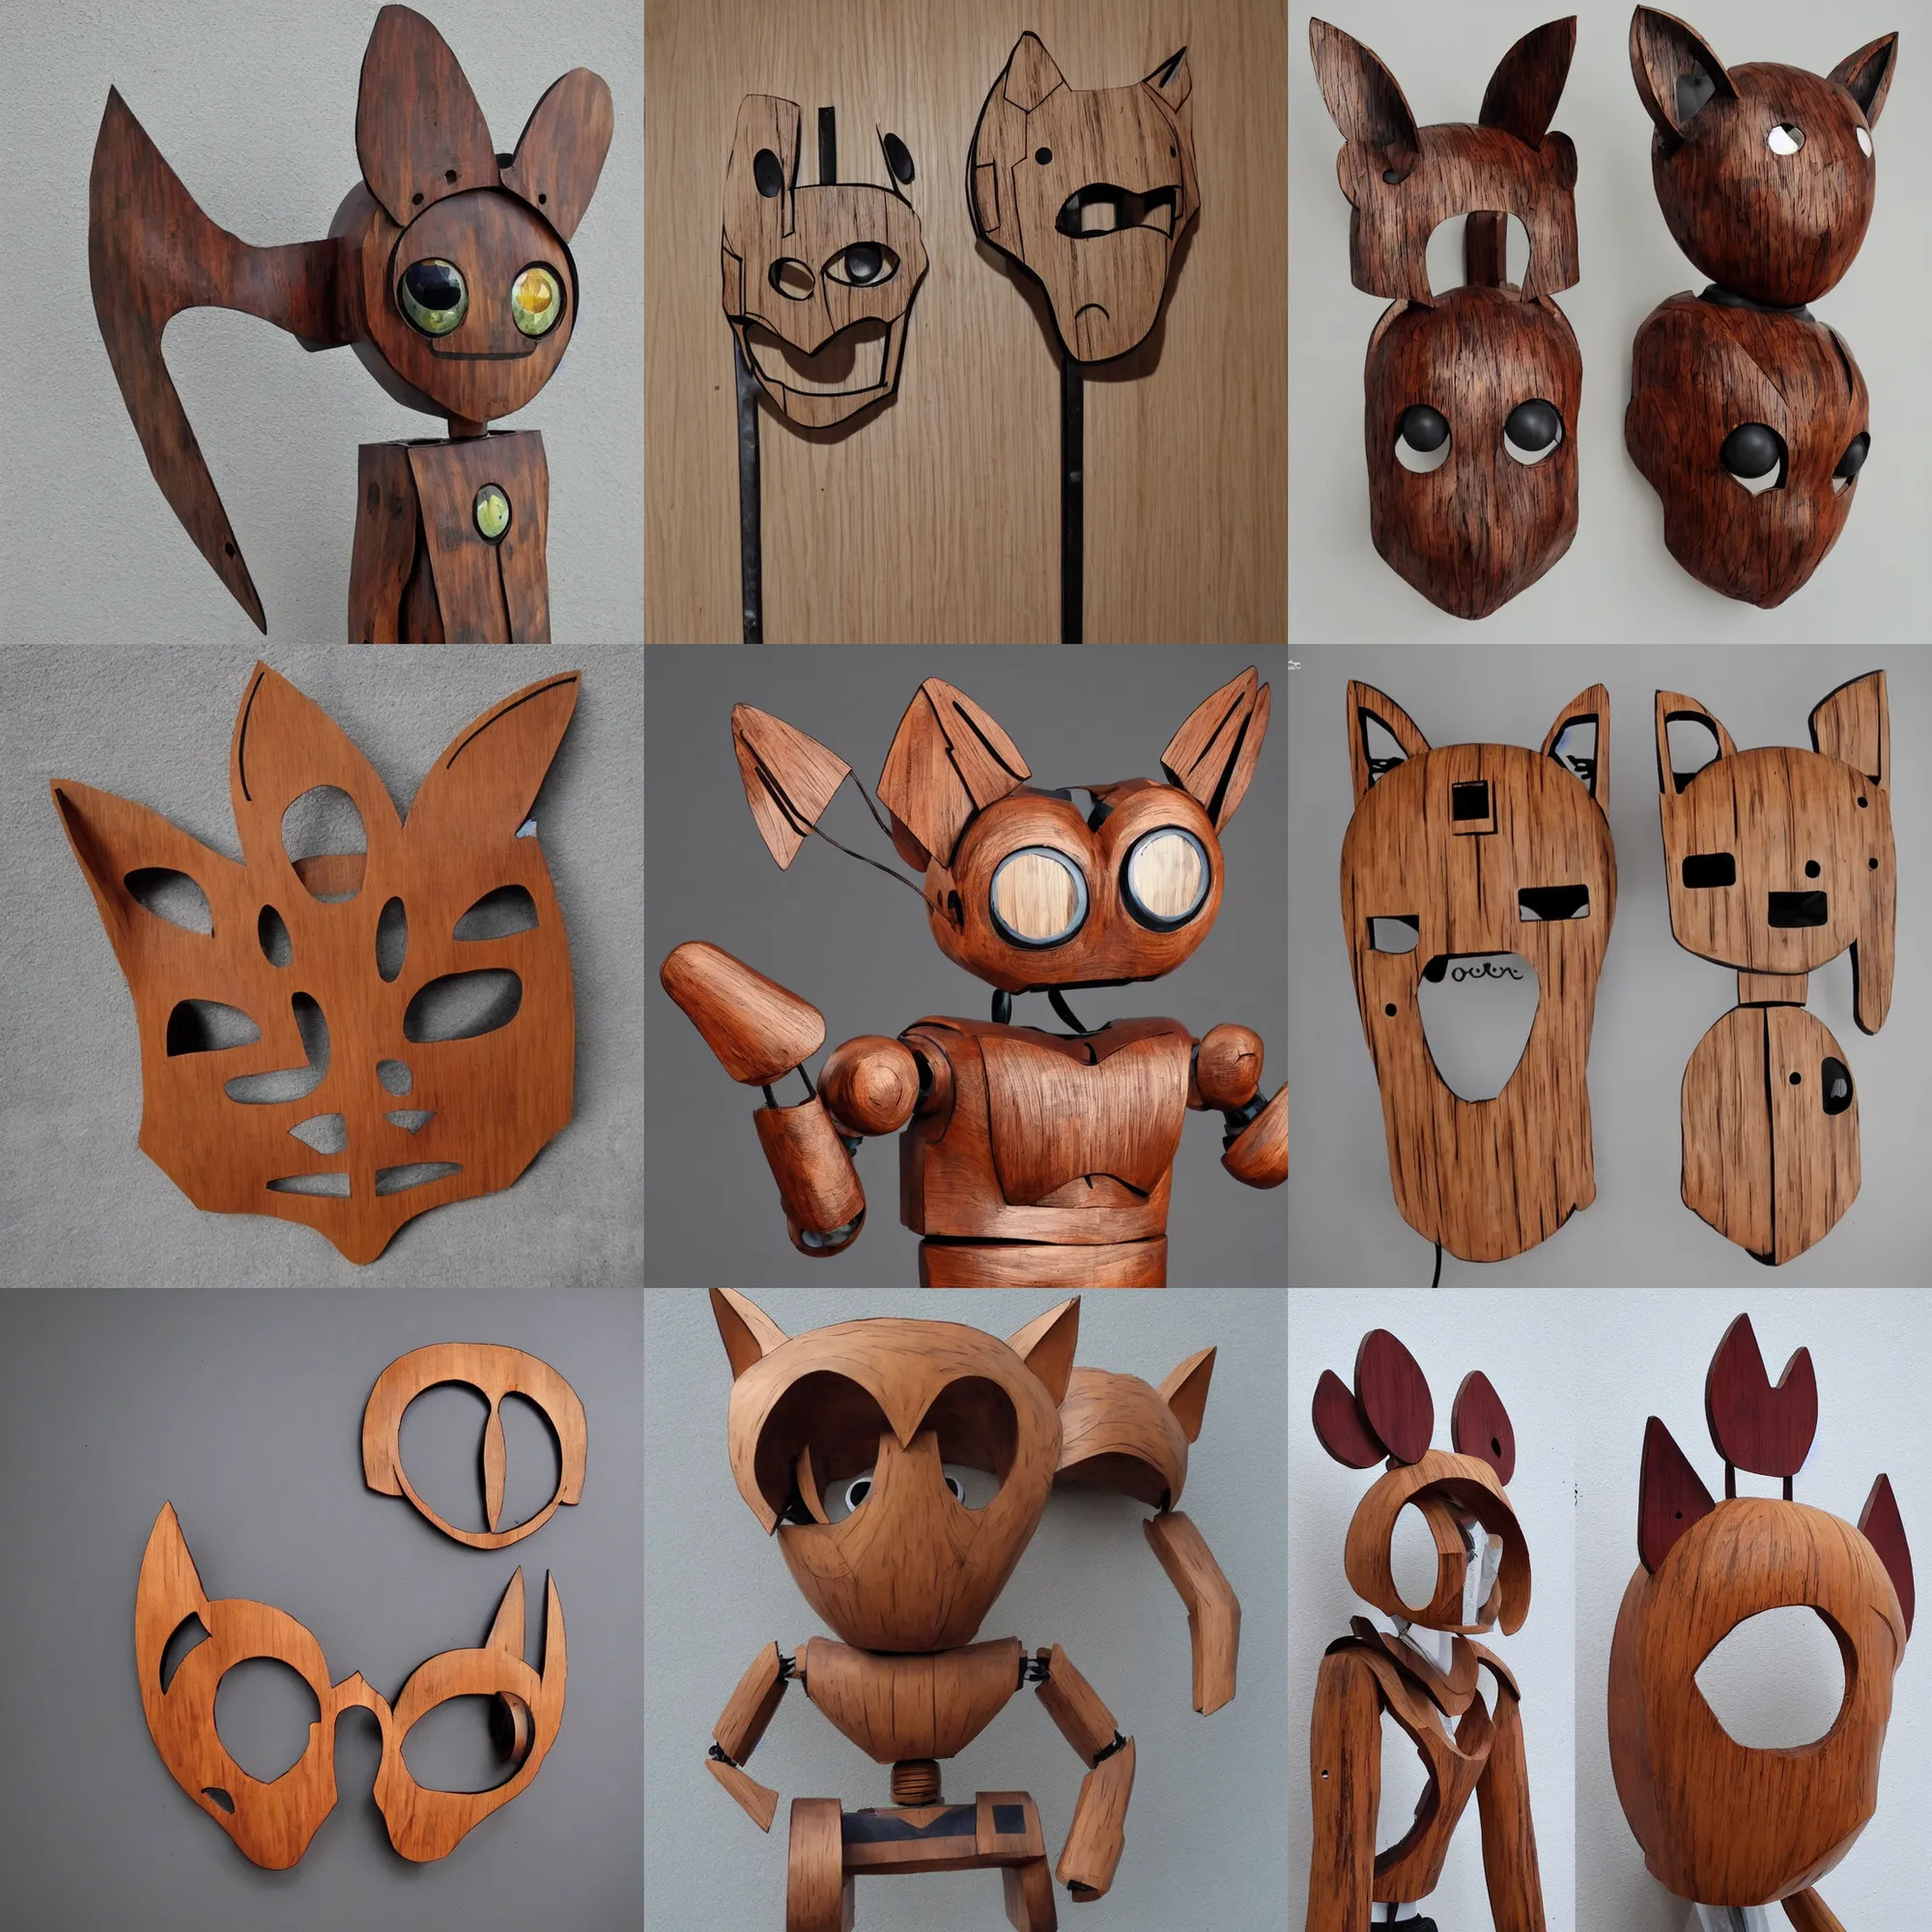 Prompt: sculpture wooden carving cute robot piedestal cat ears, cyberpunk, popart c, ollection, contemporaryart